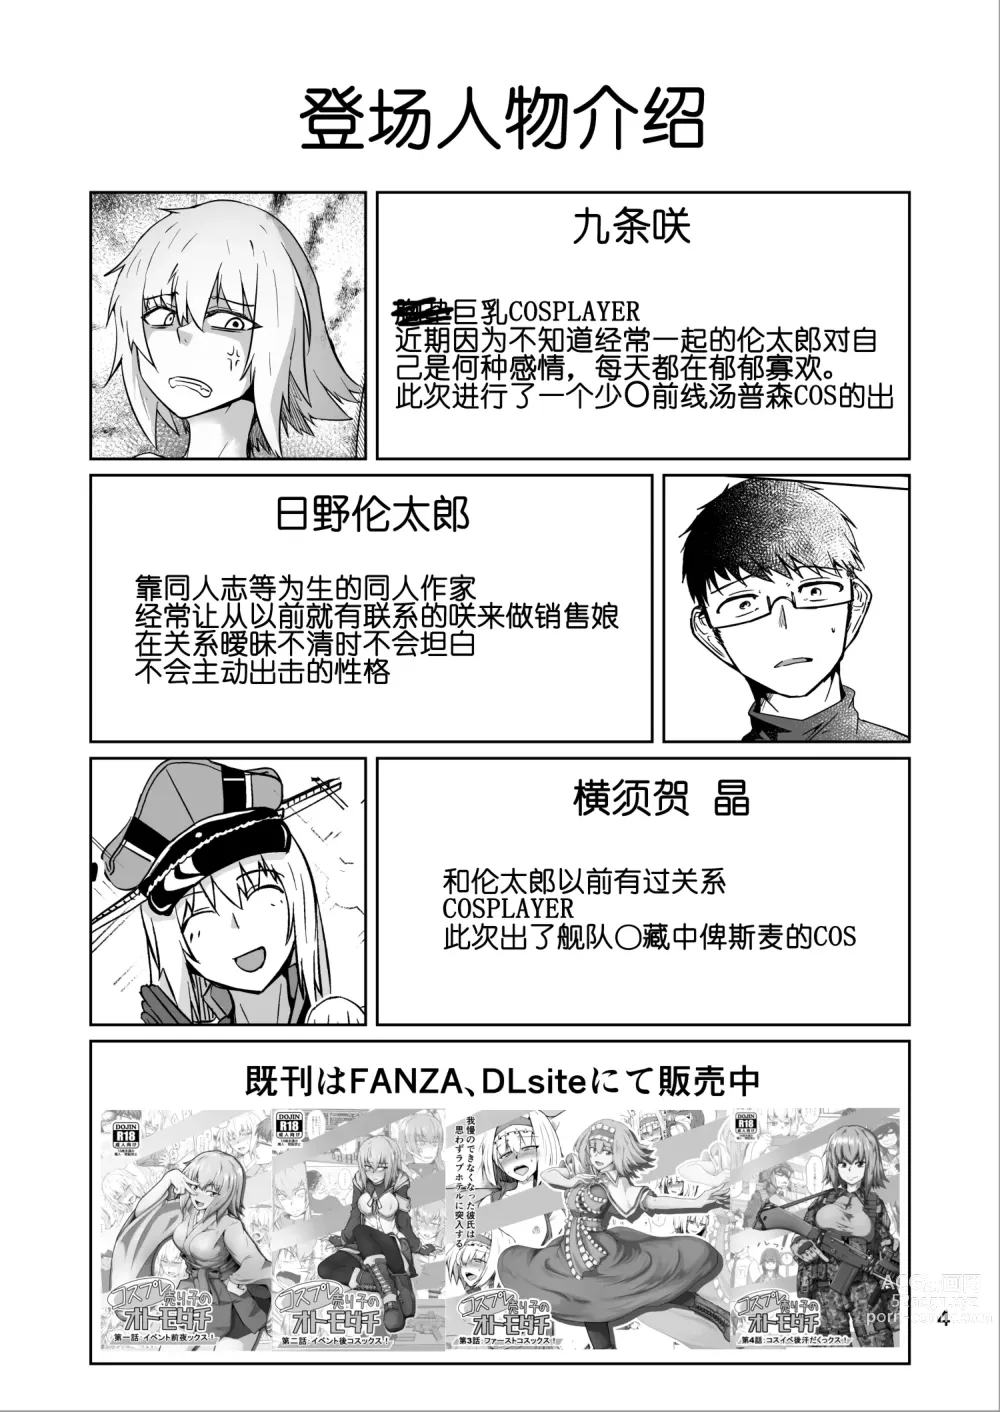 Page 3 of doujinshi Cosplay Uriko no Otomodachi Daigowa: Otomodachi Kara...